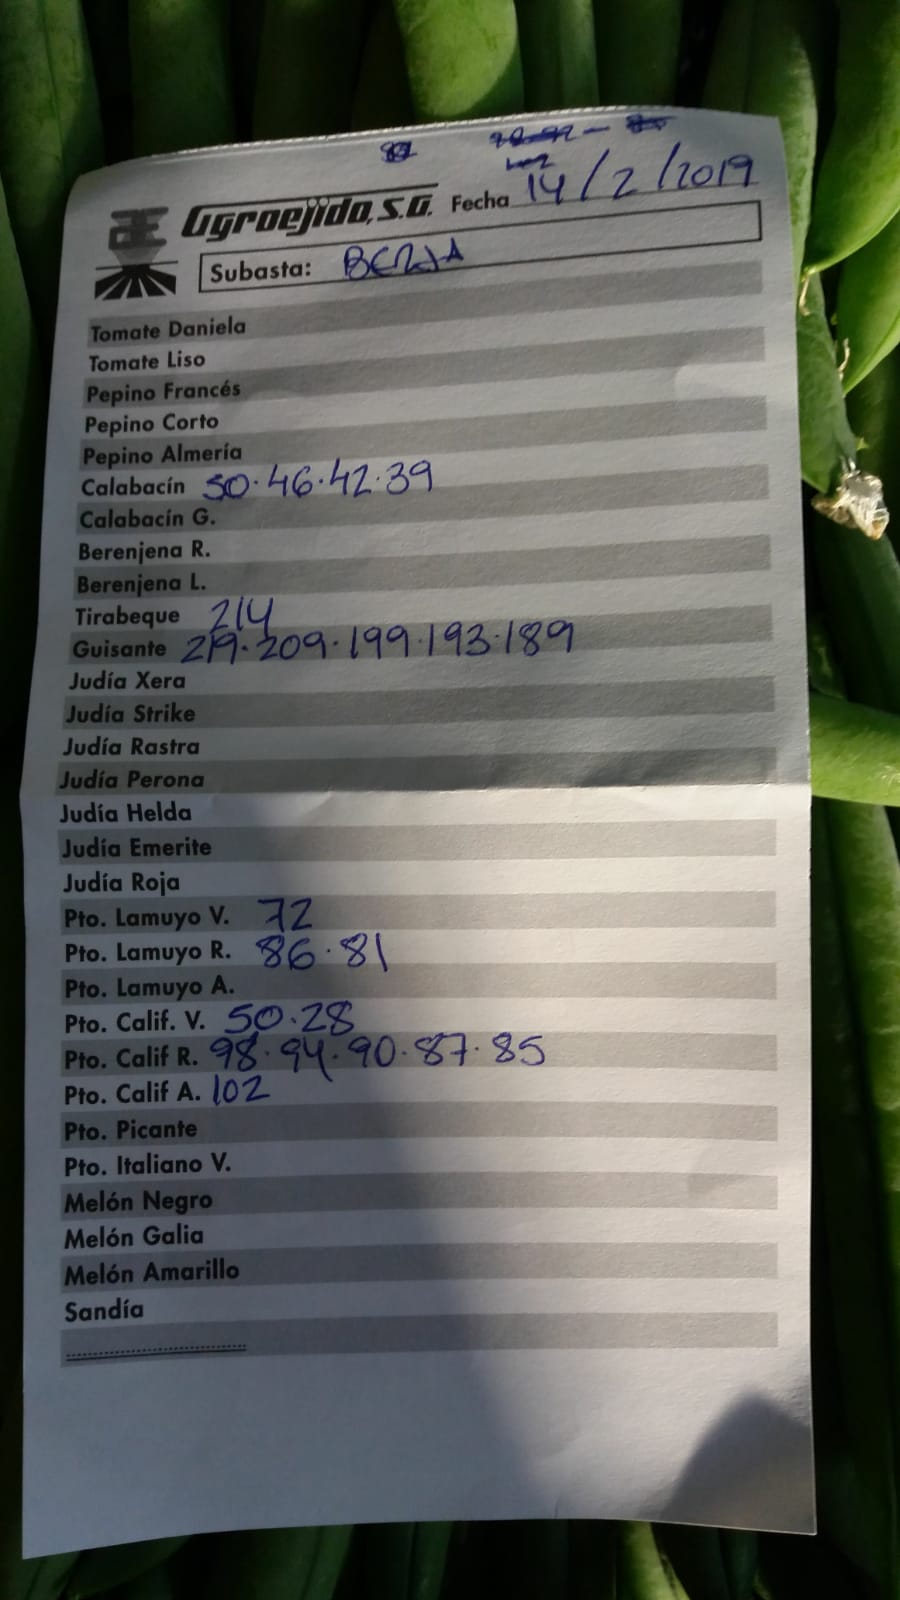 Subasta hortofrutícola AgroEjido Berja 14 de Febrero 2019